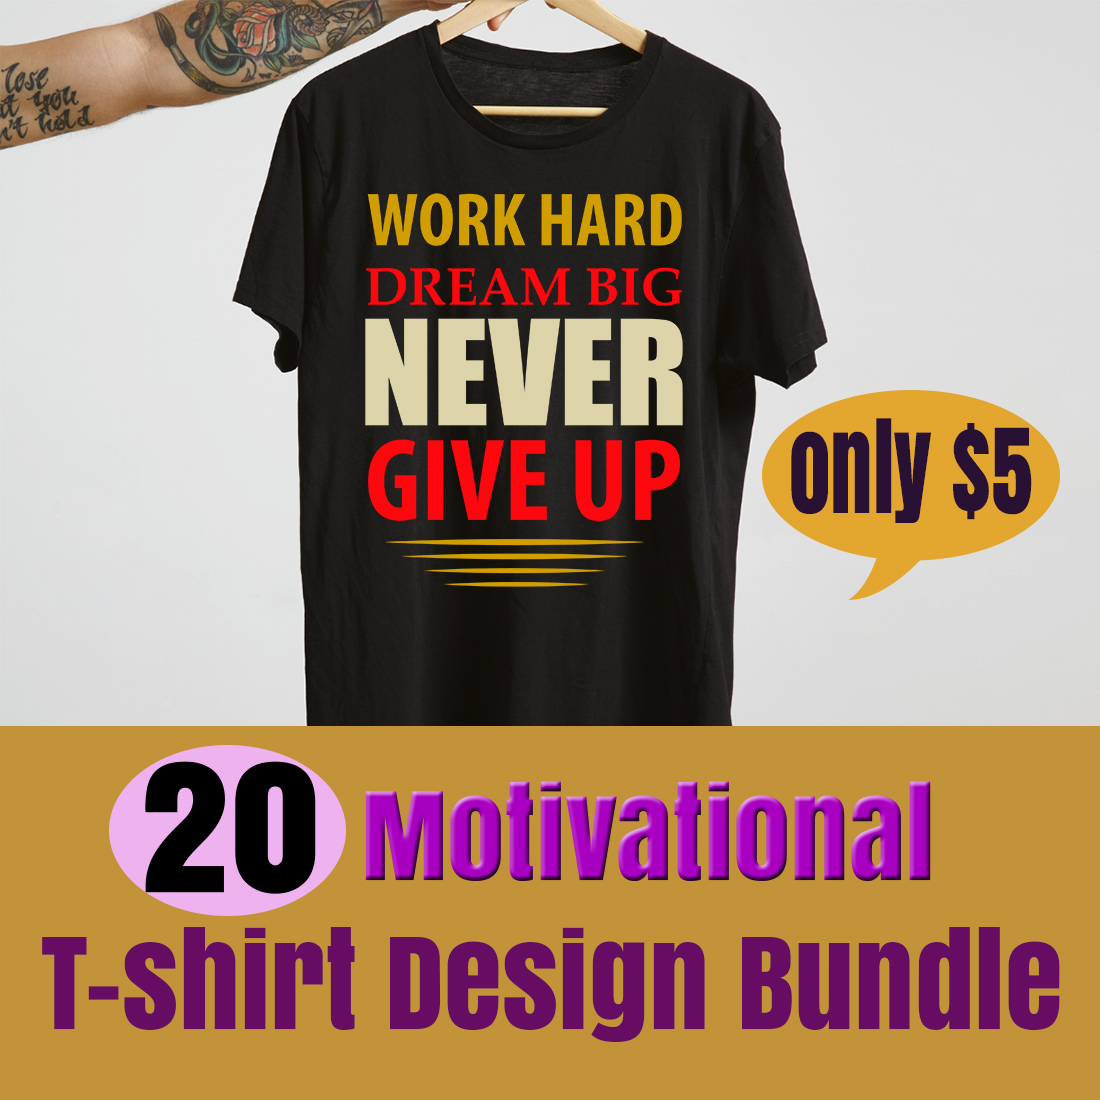 Motivational T-shirt Design SVG bundle cover image.